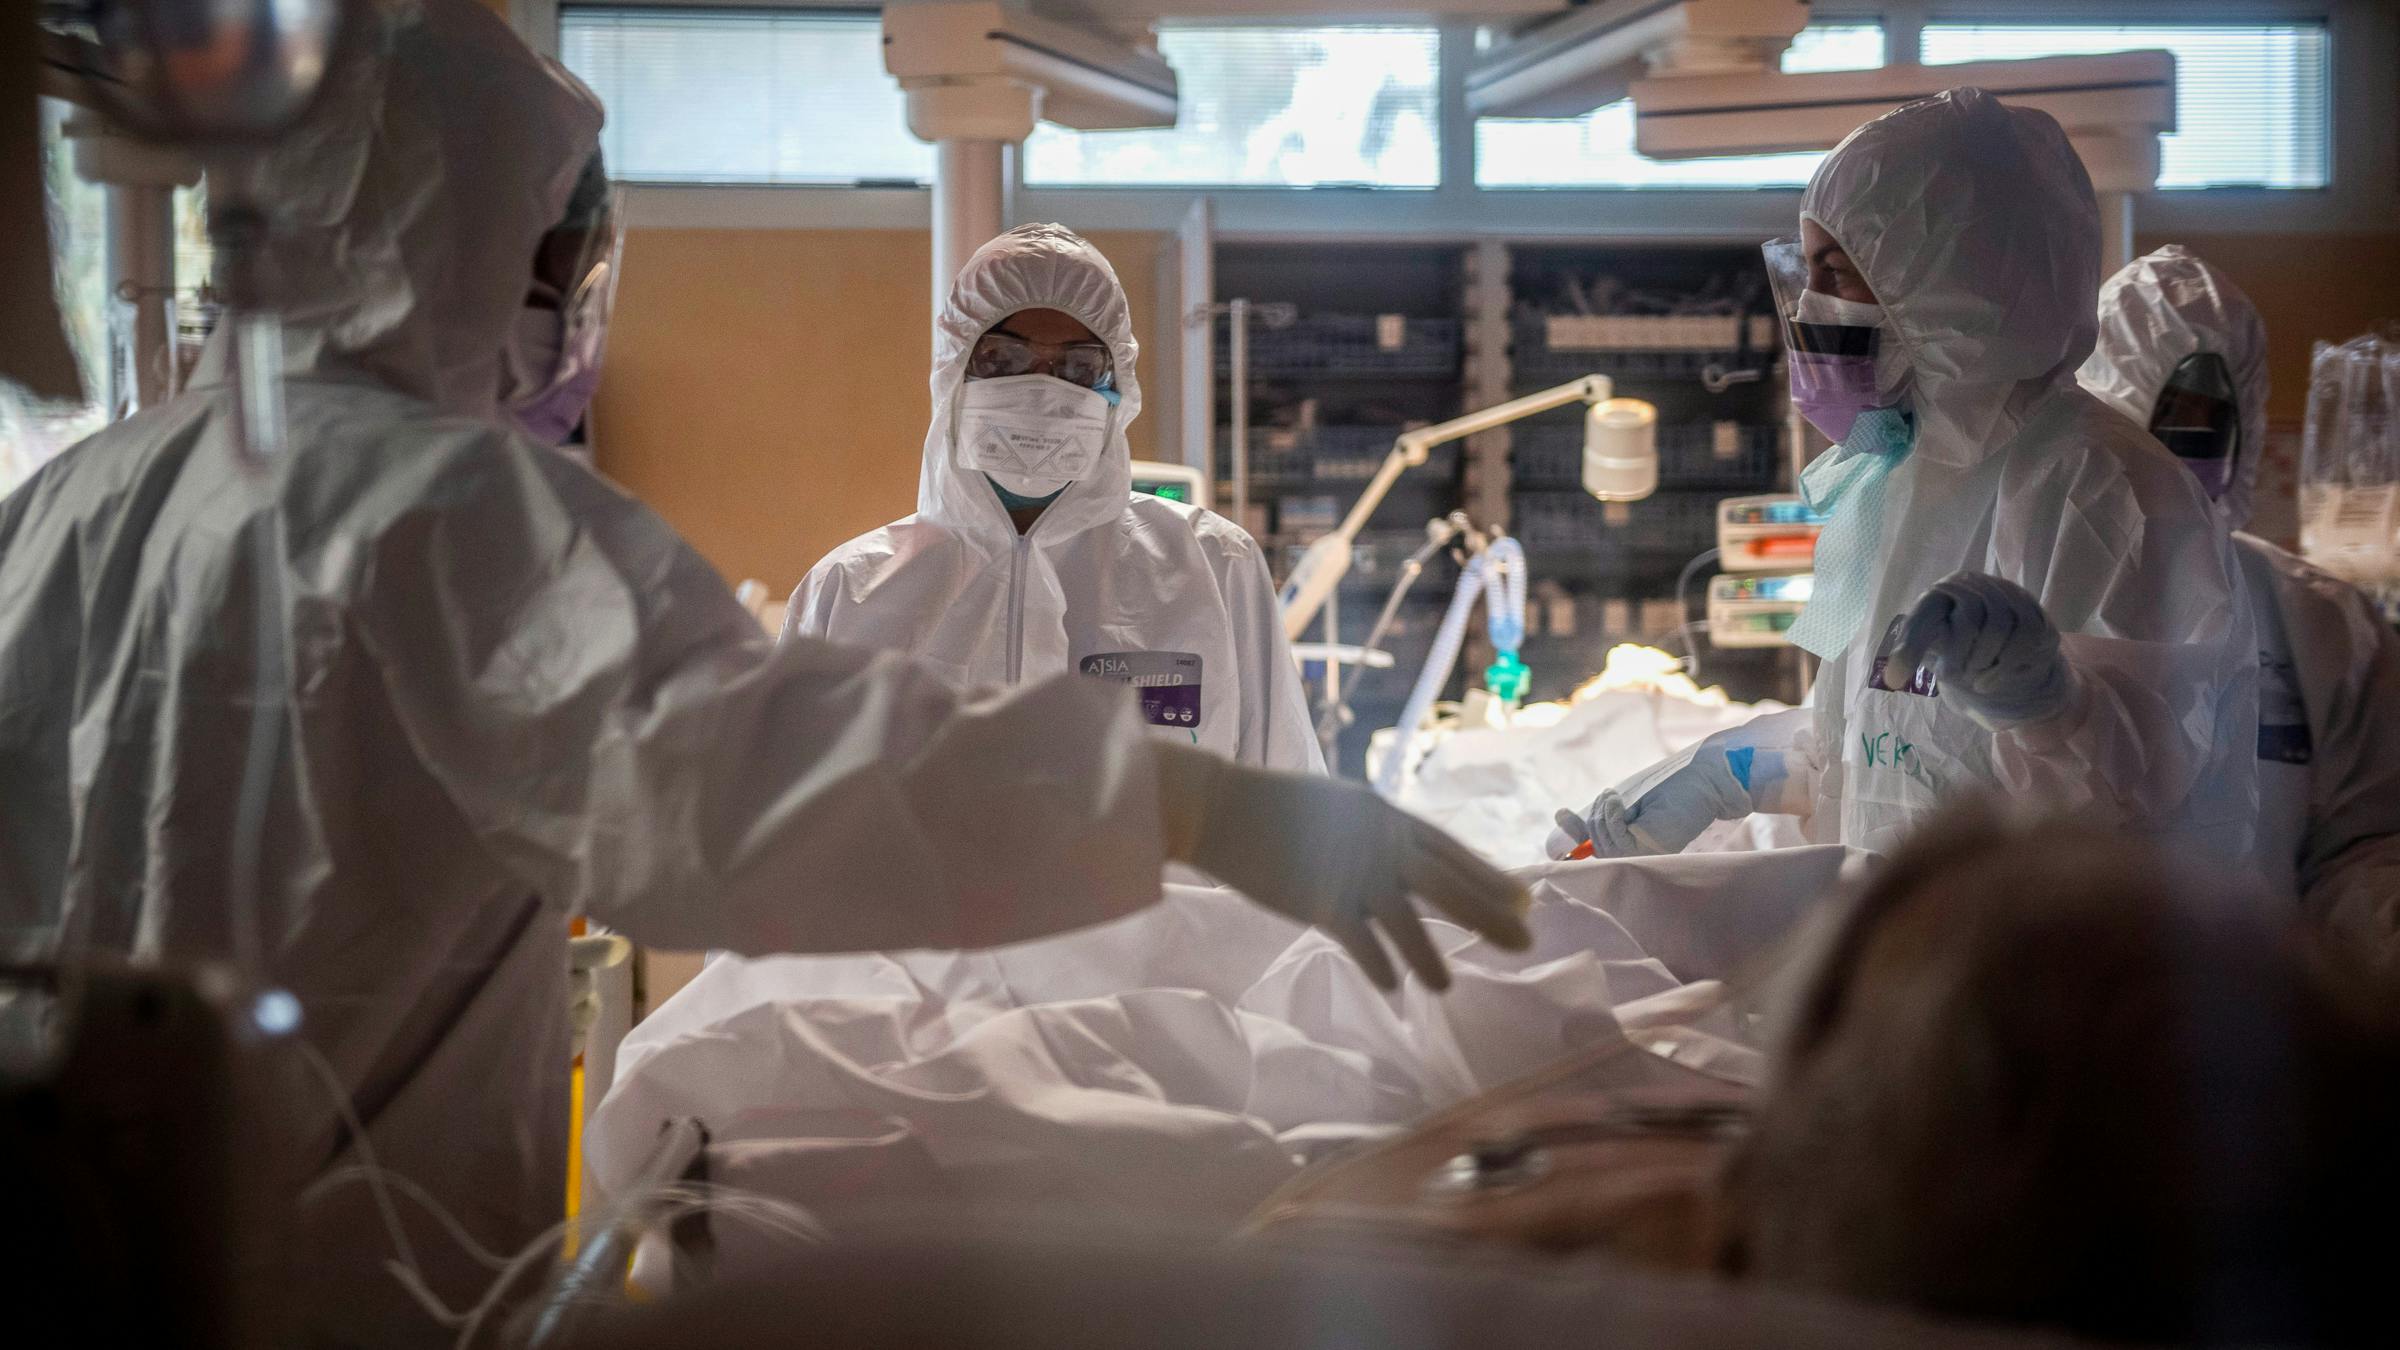 Unsere Kliniken brauchen dringend Schutzkleidung – sonst wird die Epidemie noch schlimmer